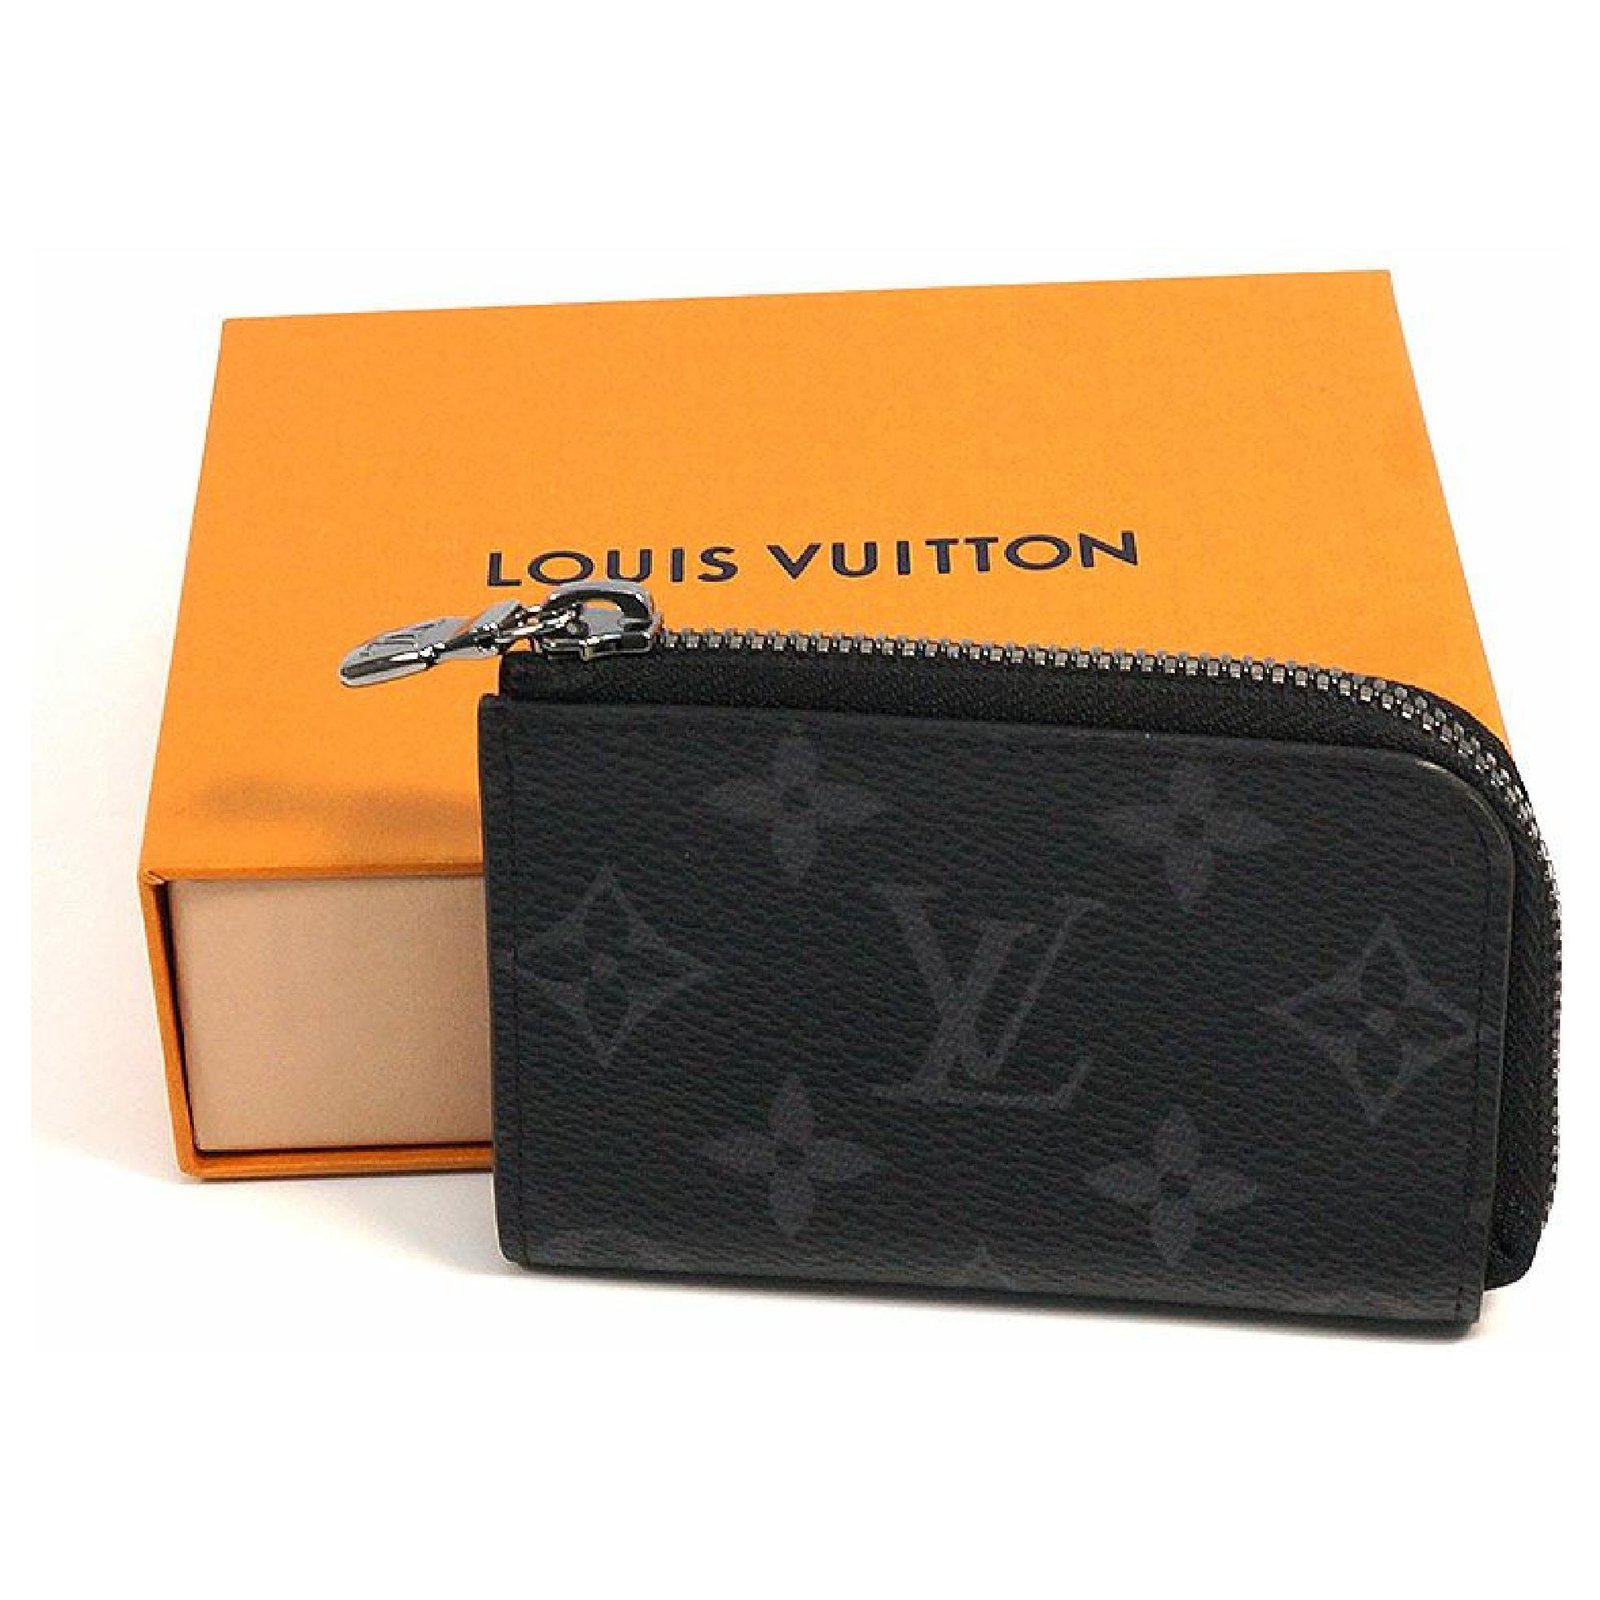 Portafogli e portatessere Louis Vuitton da uomo